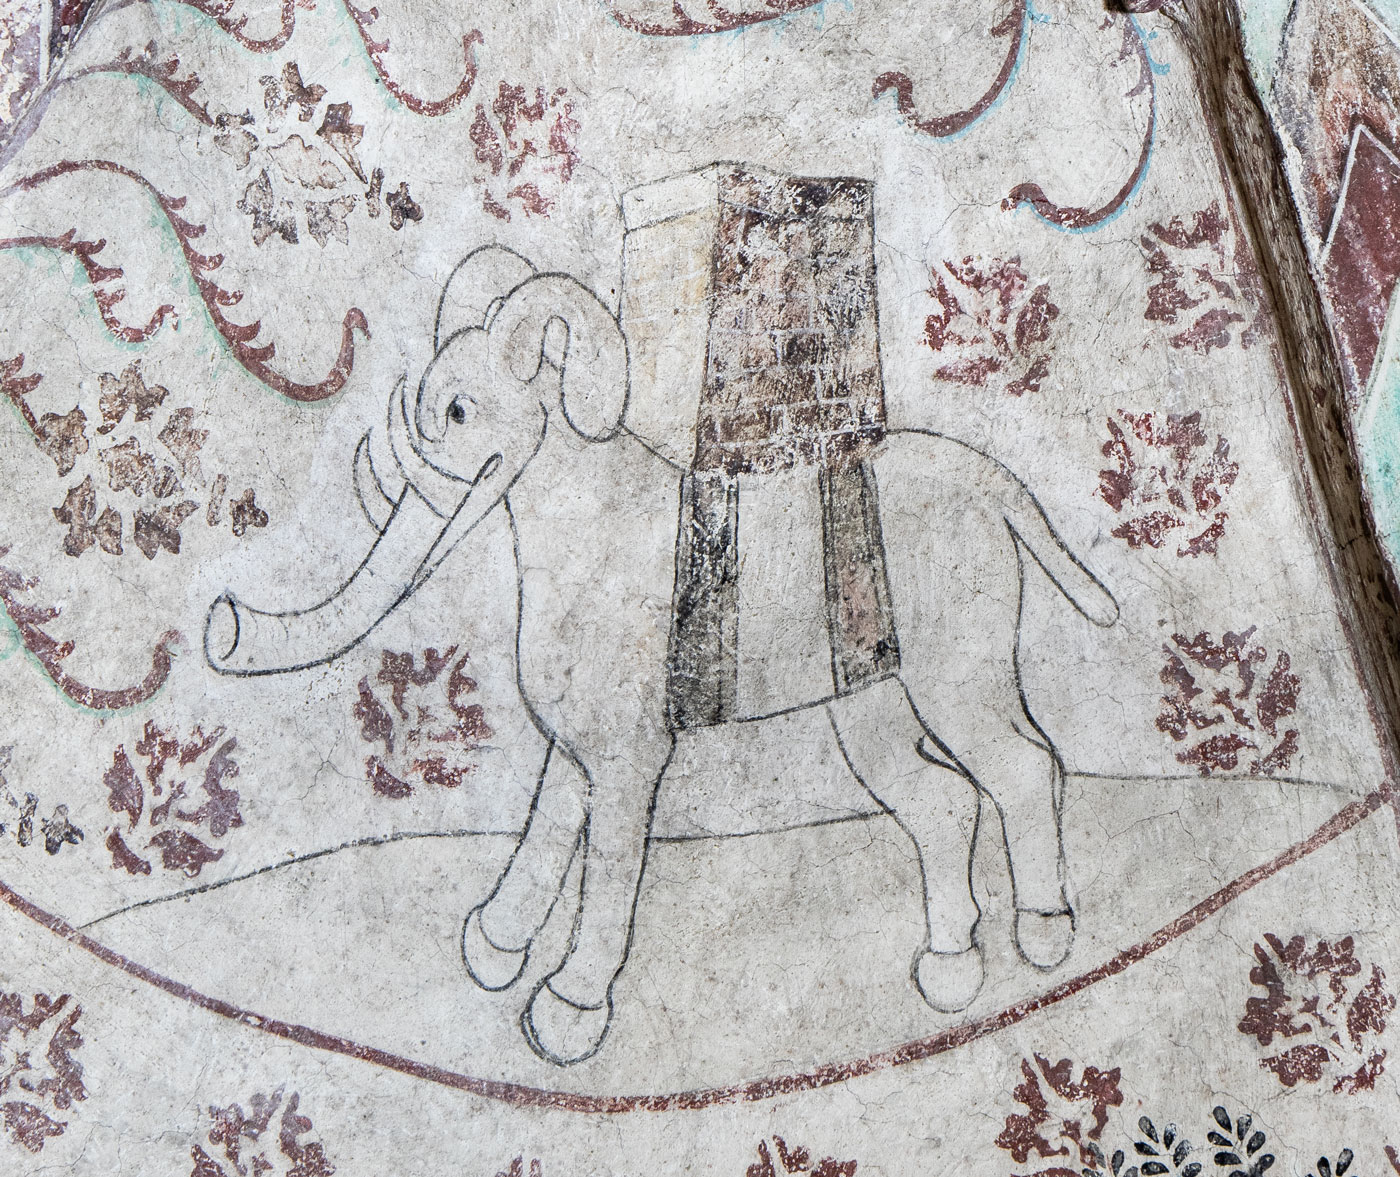 Elefant med torn på ryggen (N) - Almunge kyrka